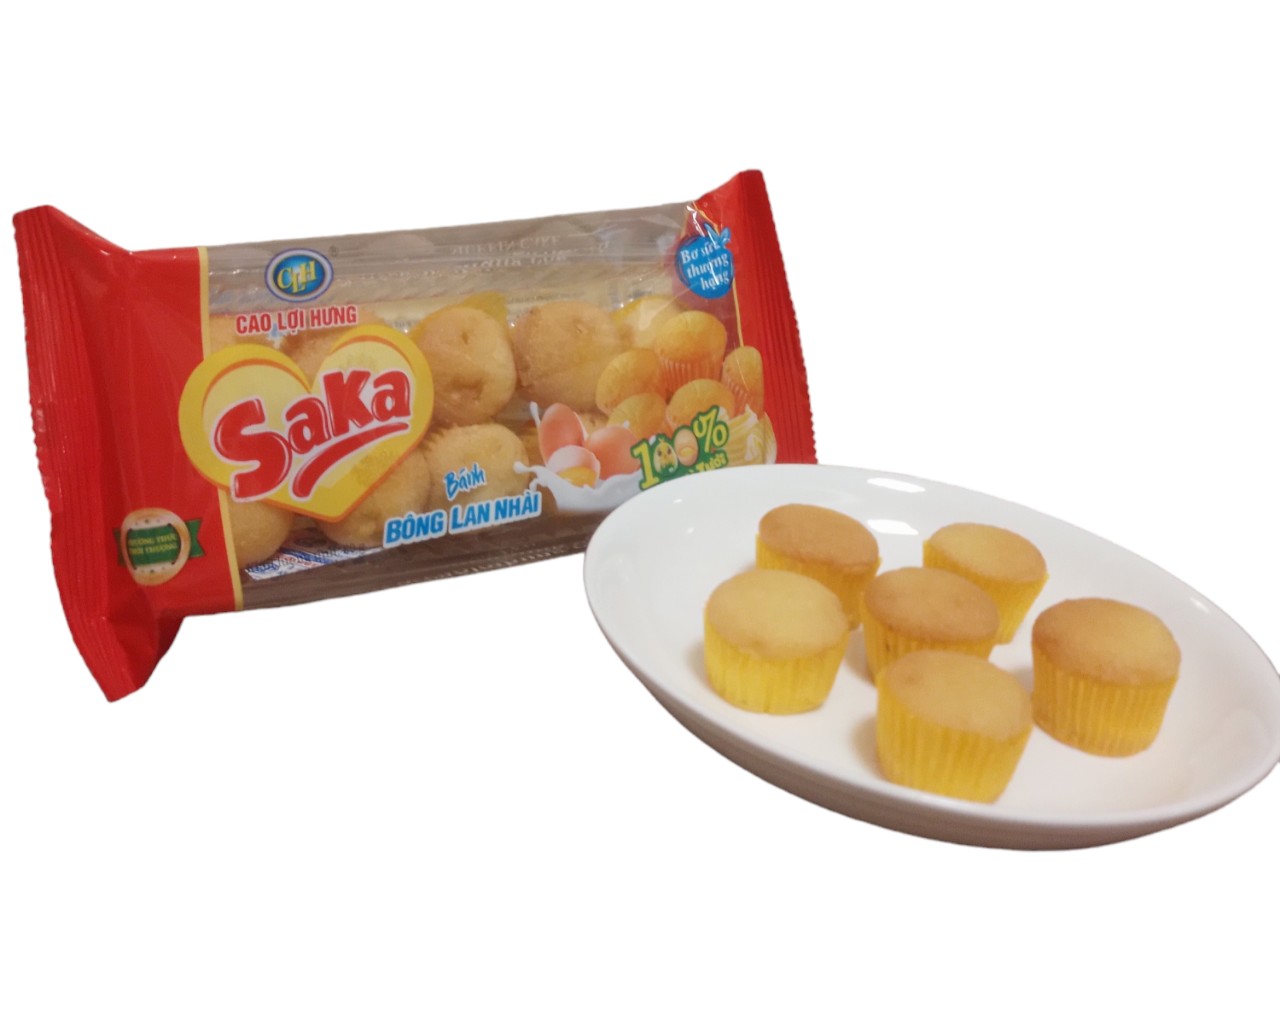 Bánh bông lan Nhài Saka 100% từ trứng gà tươi 80g